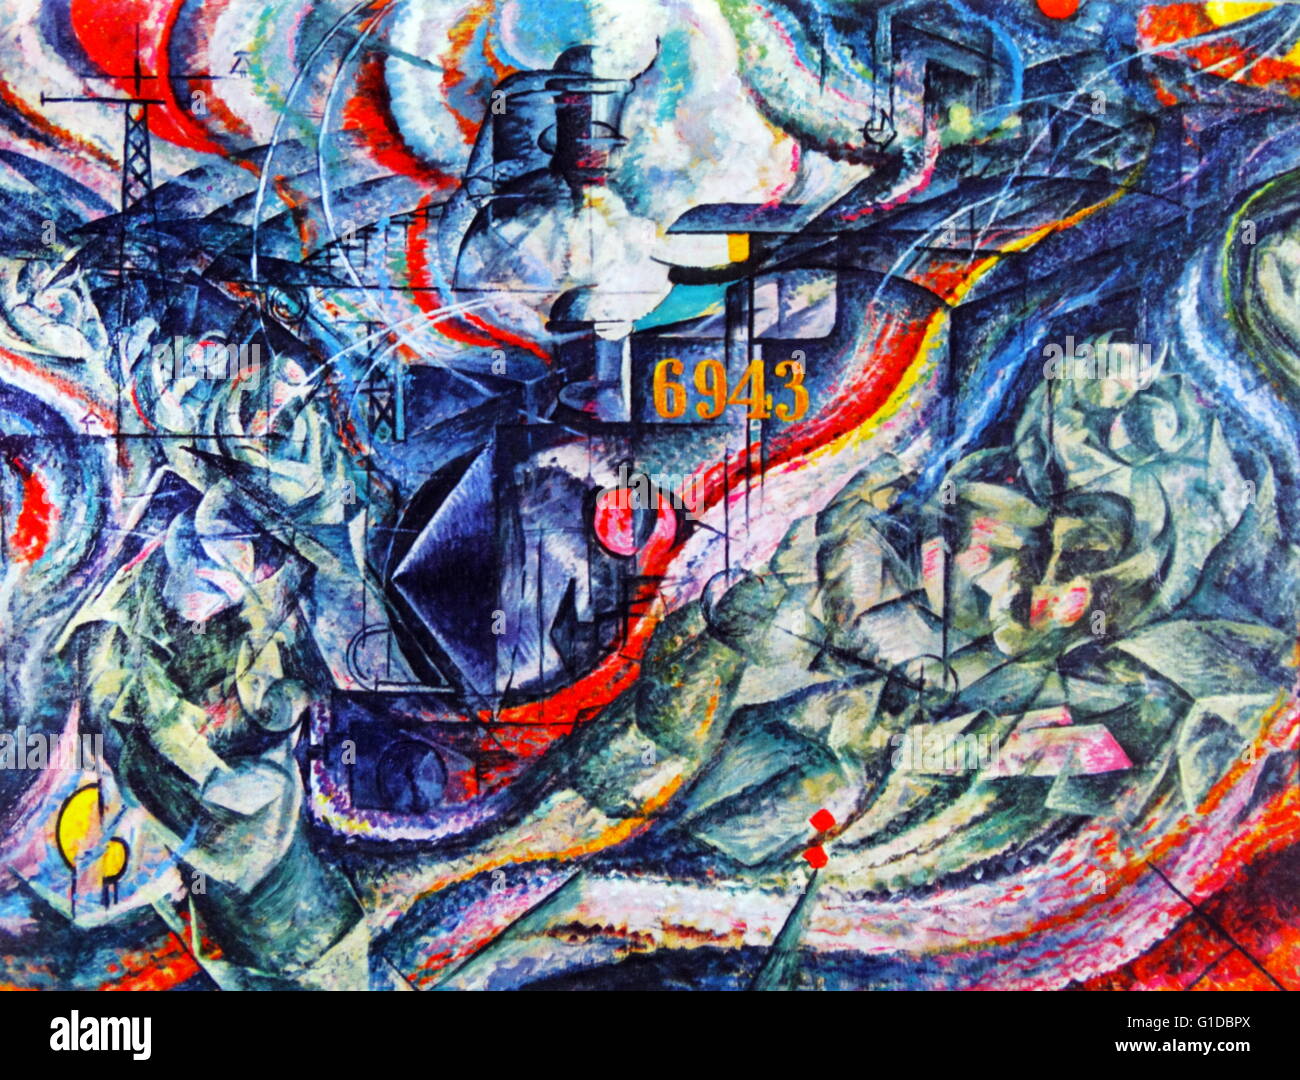 Membri della mente I: il commiato" di Umberto Boccioni. 1911. Congedi è stato il primo di Boccioni la serie di tre membri della mente. Umberto Boccioni 1882 - 1916, è stato un pittore e scultore italiano. Egli ha contribuito a forma di movimento futurista . Foto Stock